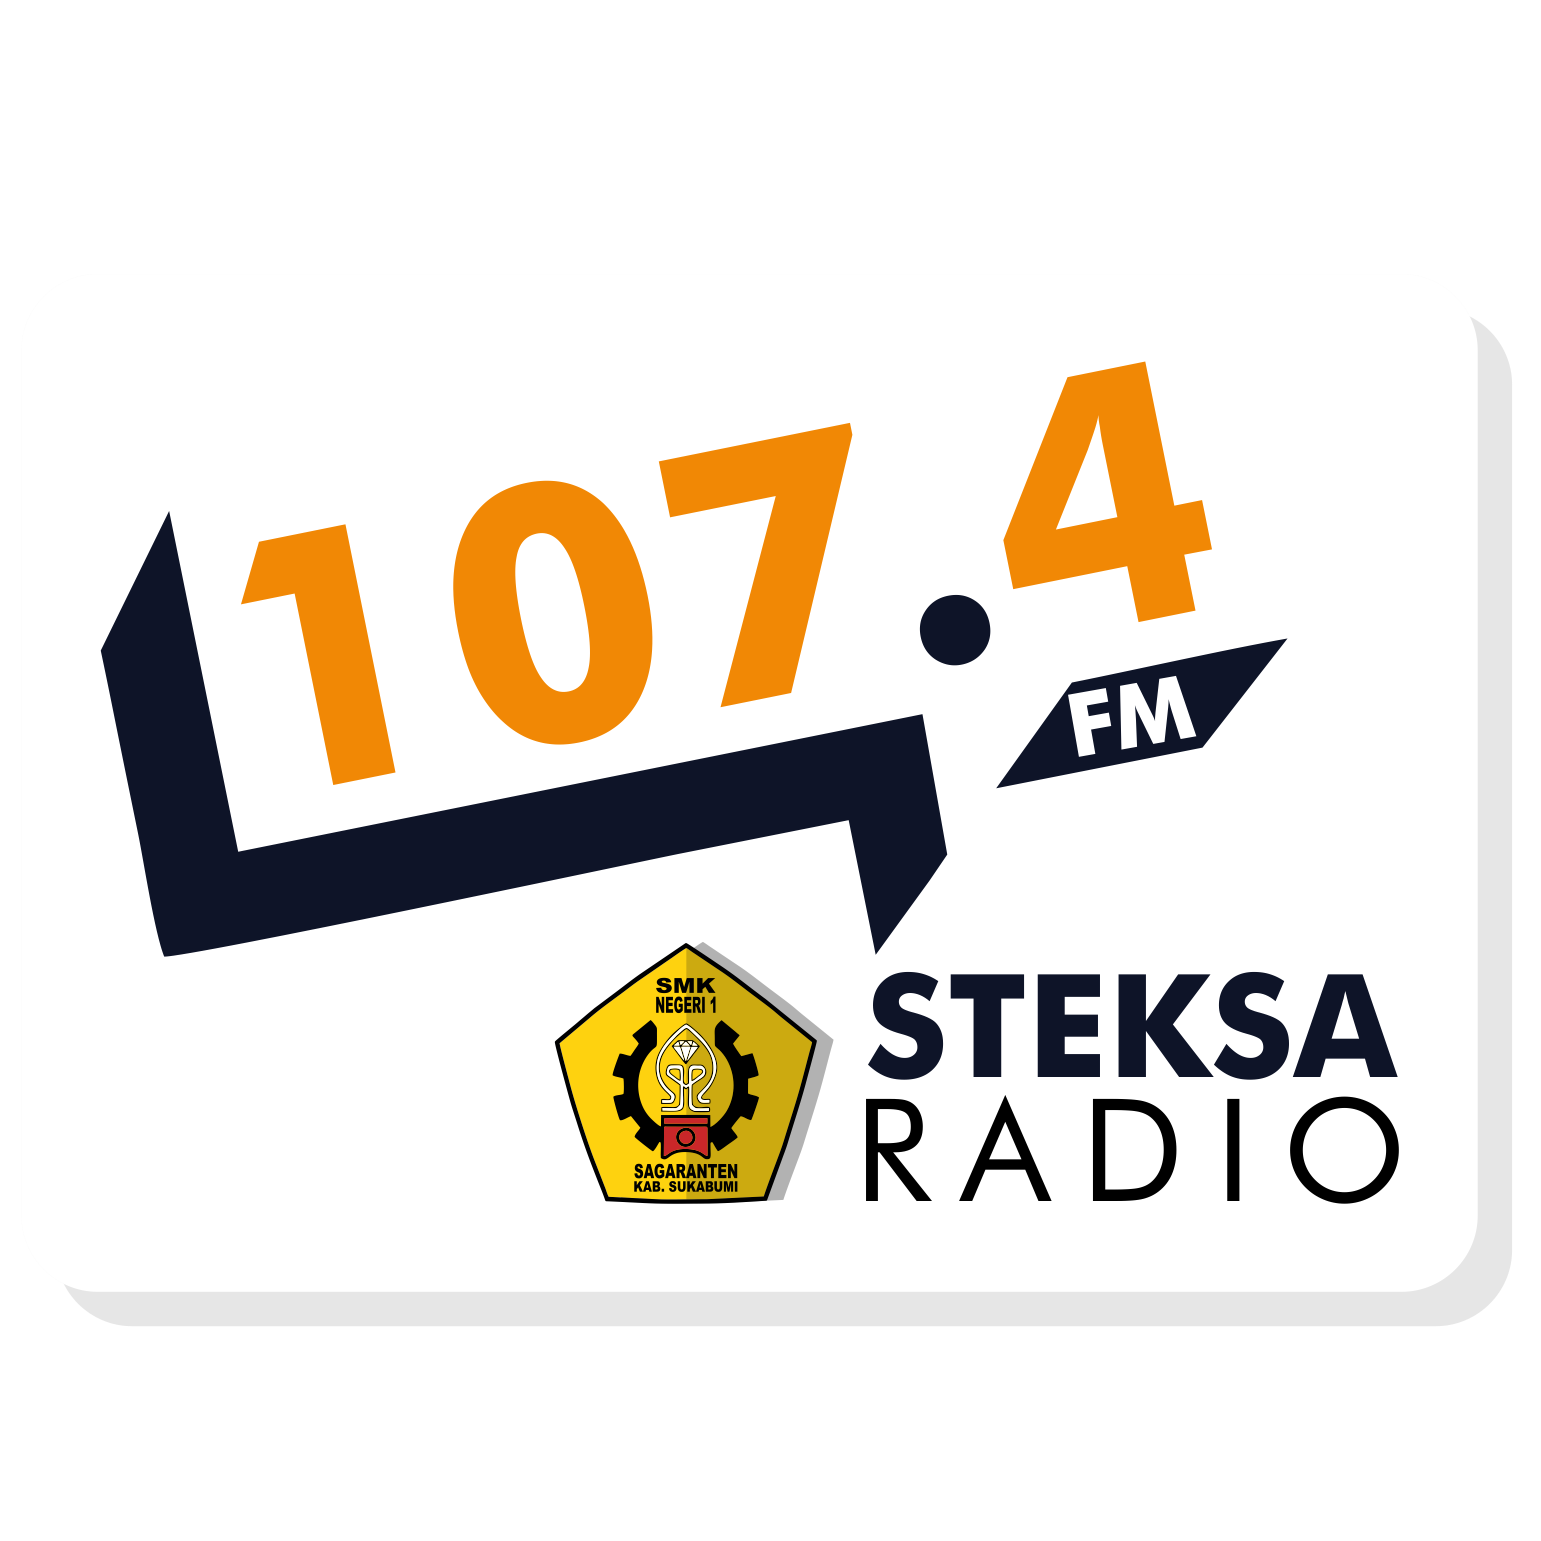 Steksa Radio